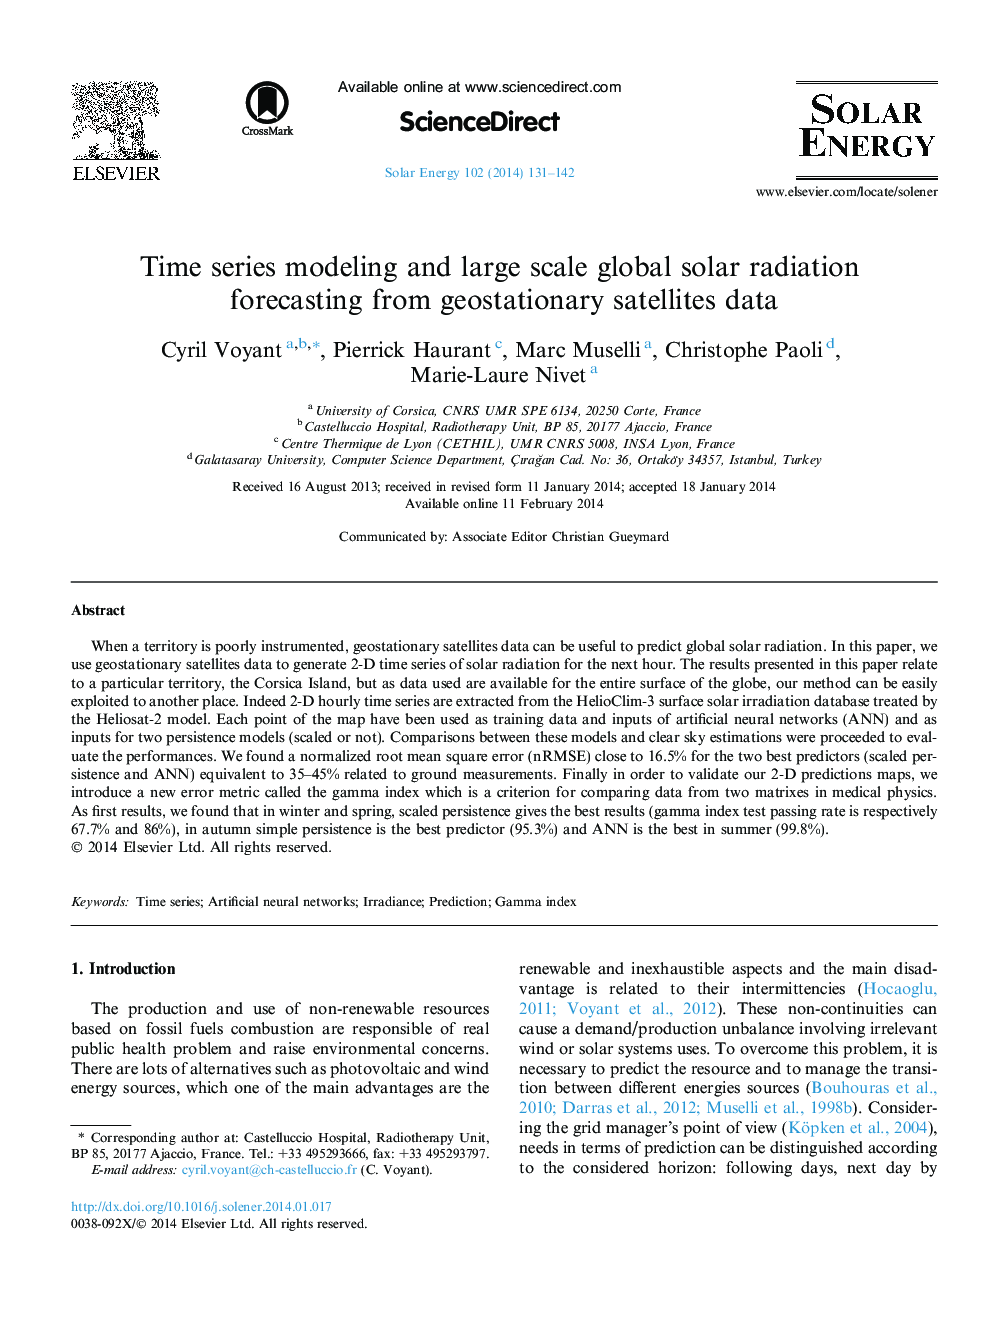 مدل سازی زمان سری و پیش بینی ماهواره های ژئواسترایی ماهواره های بزرگ در مقیاس جهانی 